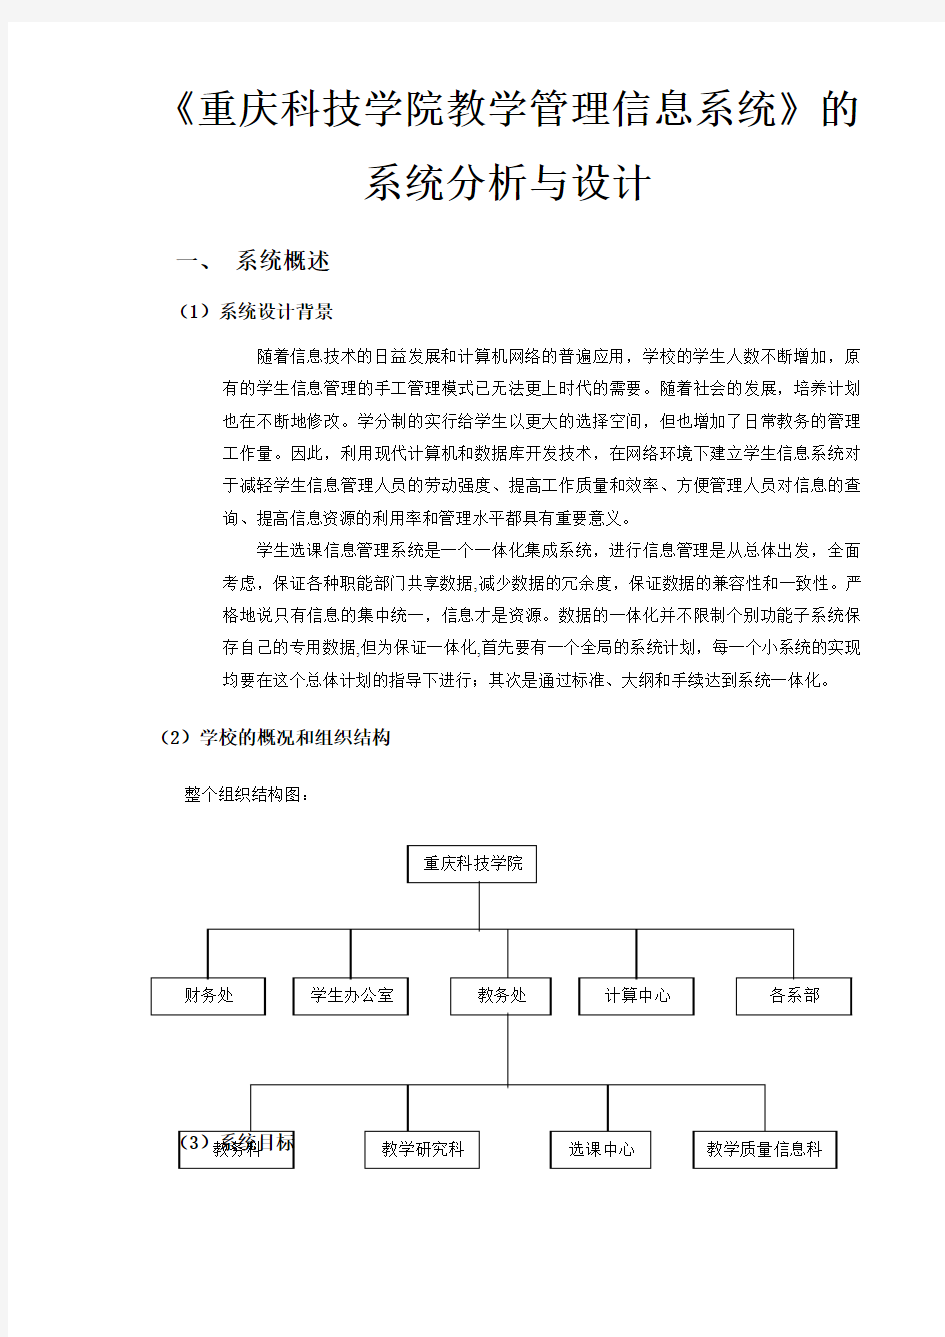 《重庆科技学院教学管理信息系统》的系统分析与设计